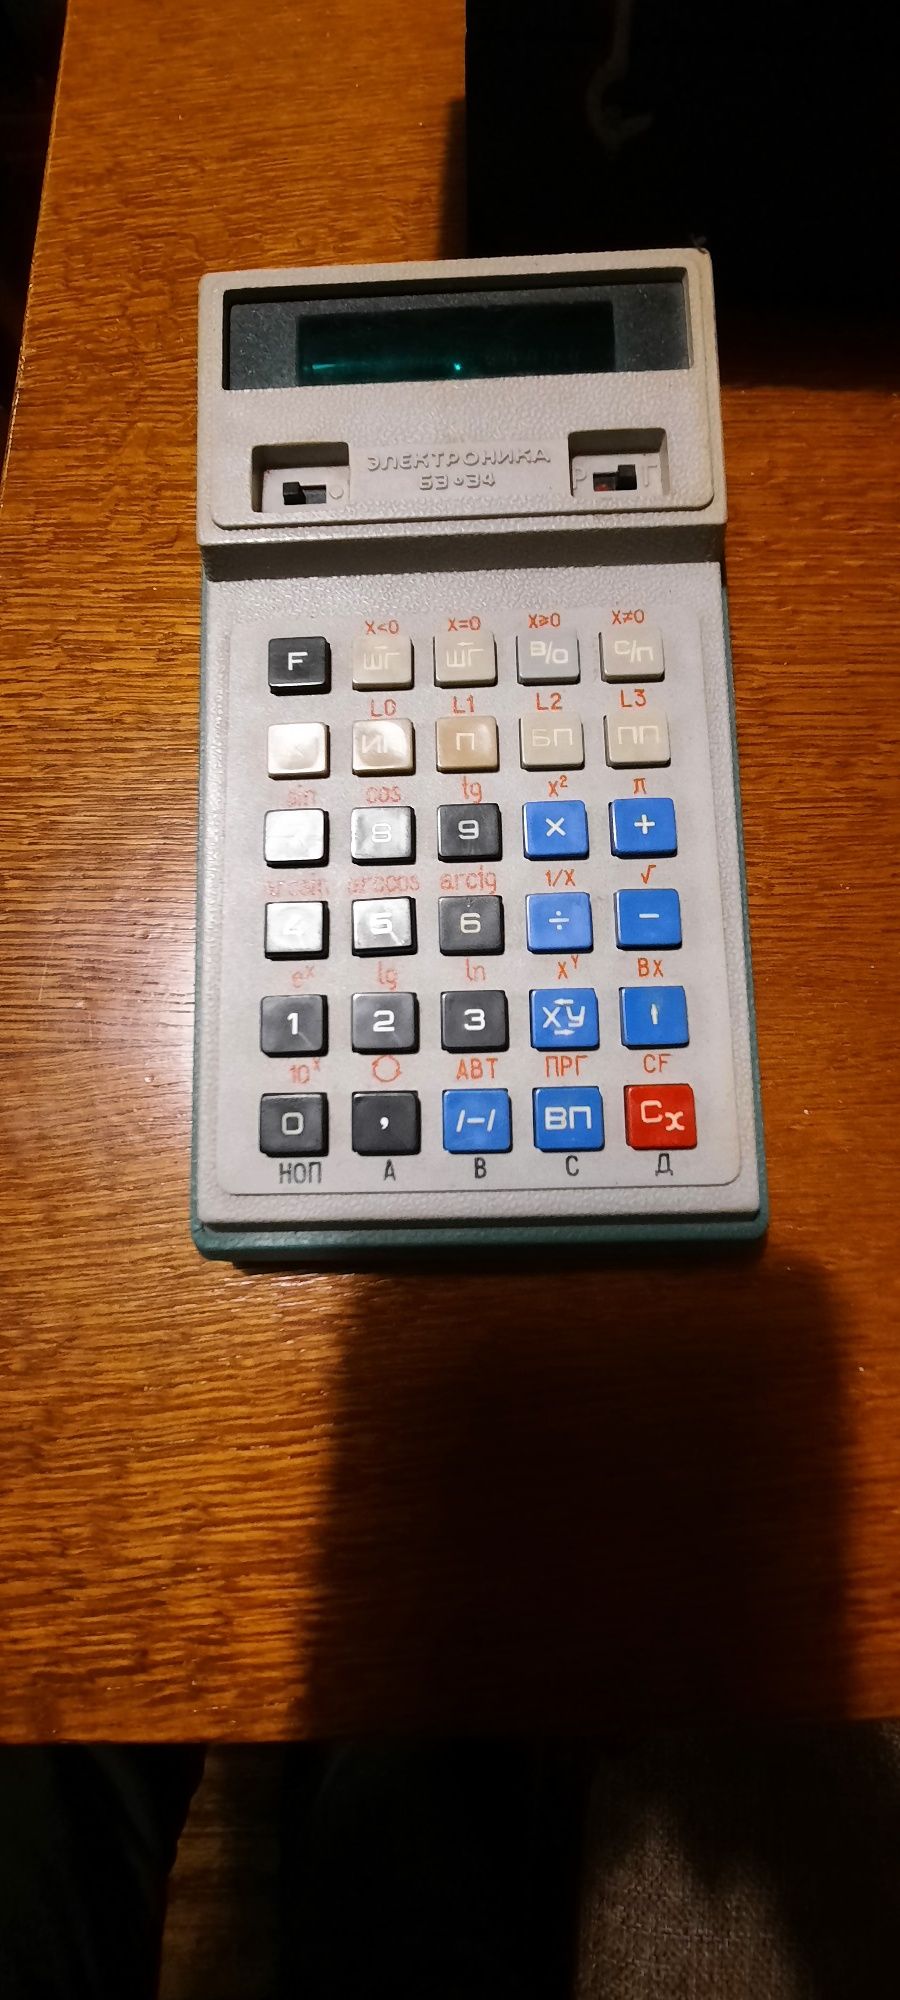 Інженерний калькулятор на ламп Б3-34 Д0.55